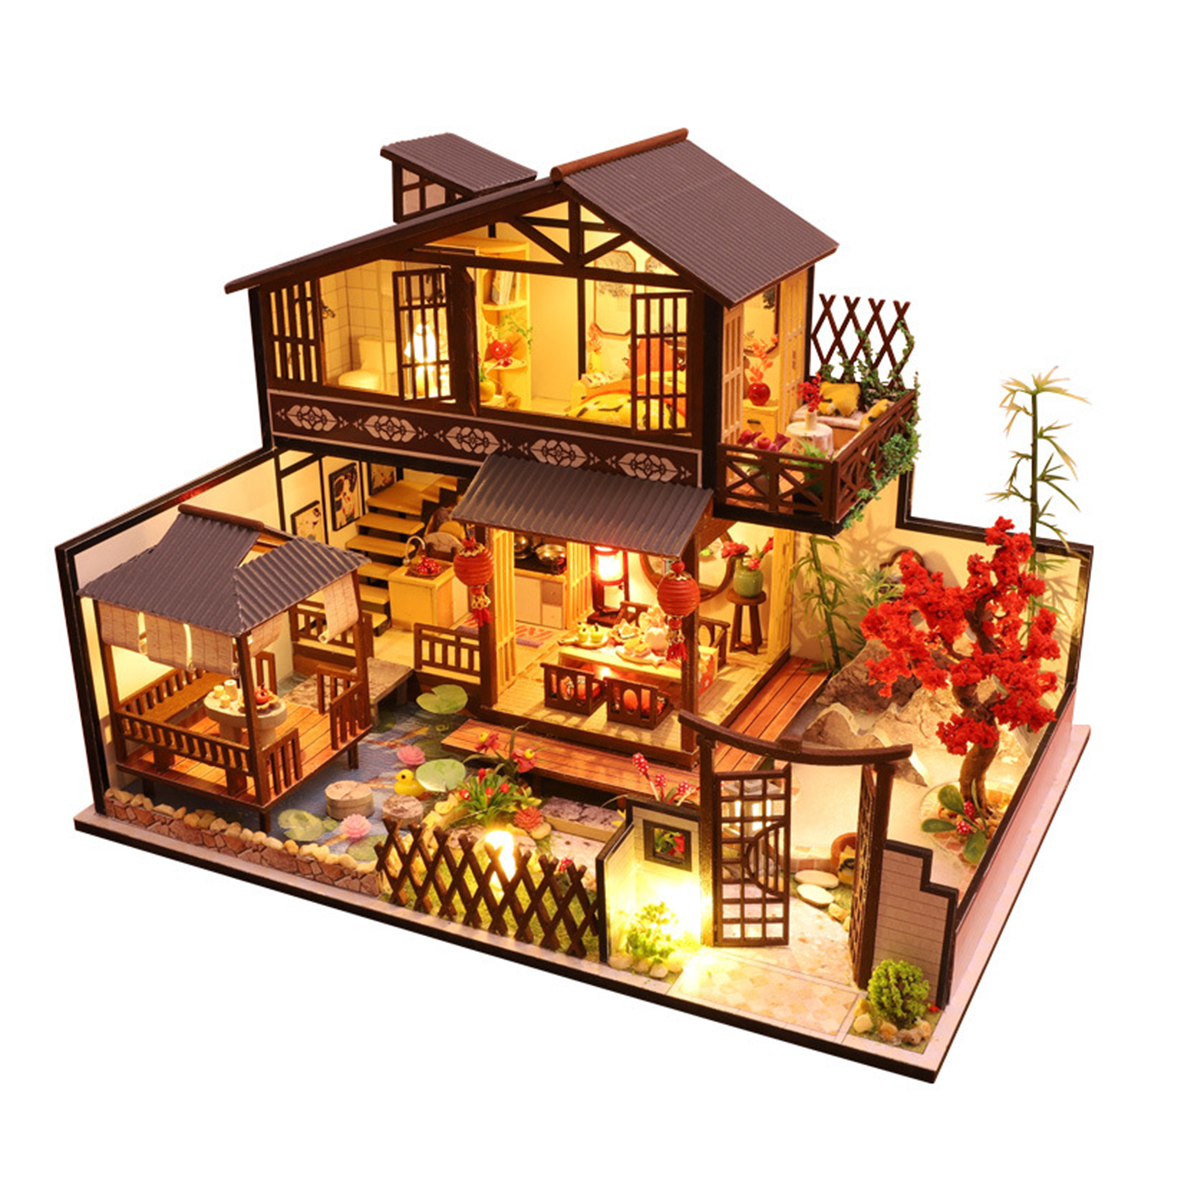 Süß Minihaus DIY Puppenhaus Kit Holz Modell Handwerk Haus Dollhouse Spielzeug 